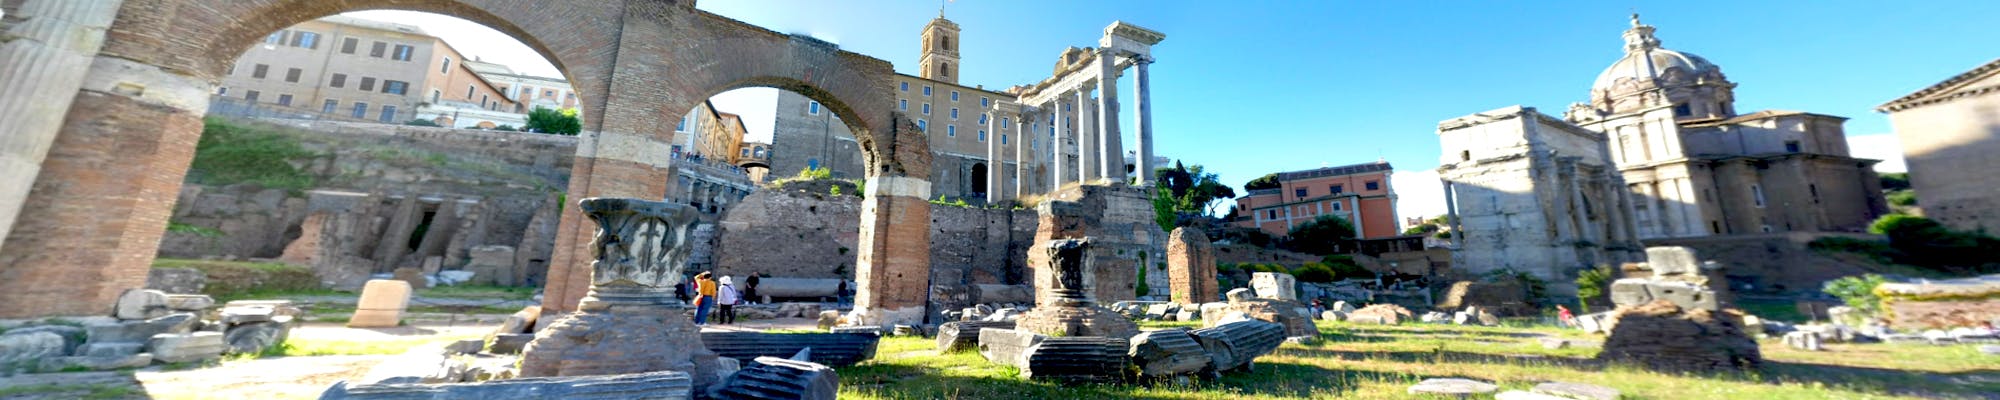 Virtuele rondleiding door het Forum Romanum vanuit huis